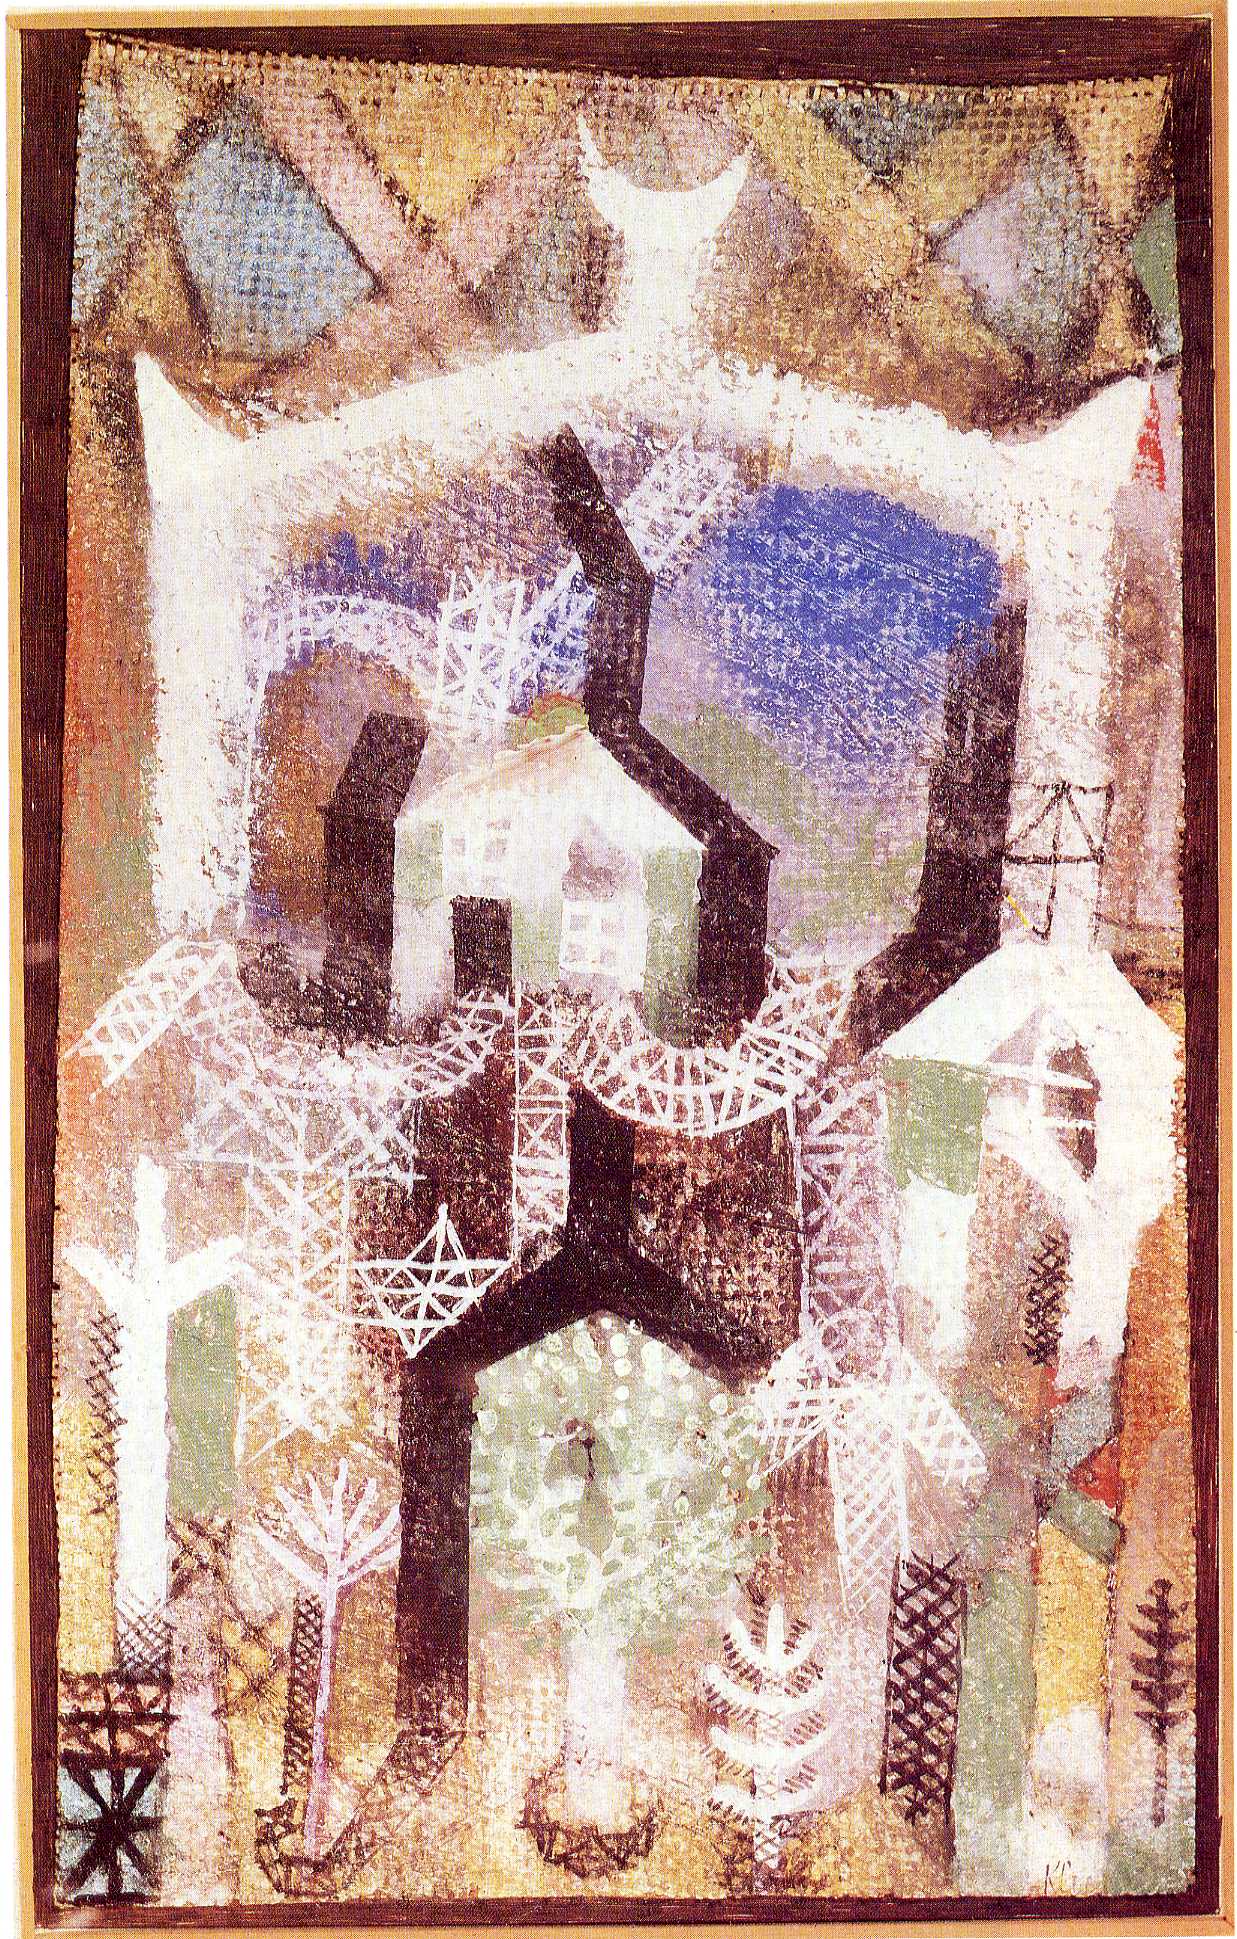 Summer houses (1919).